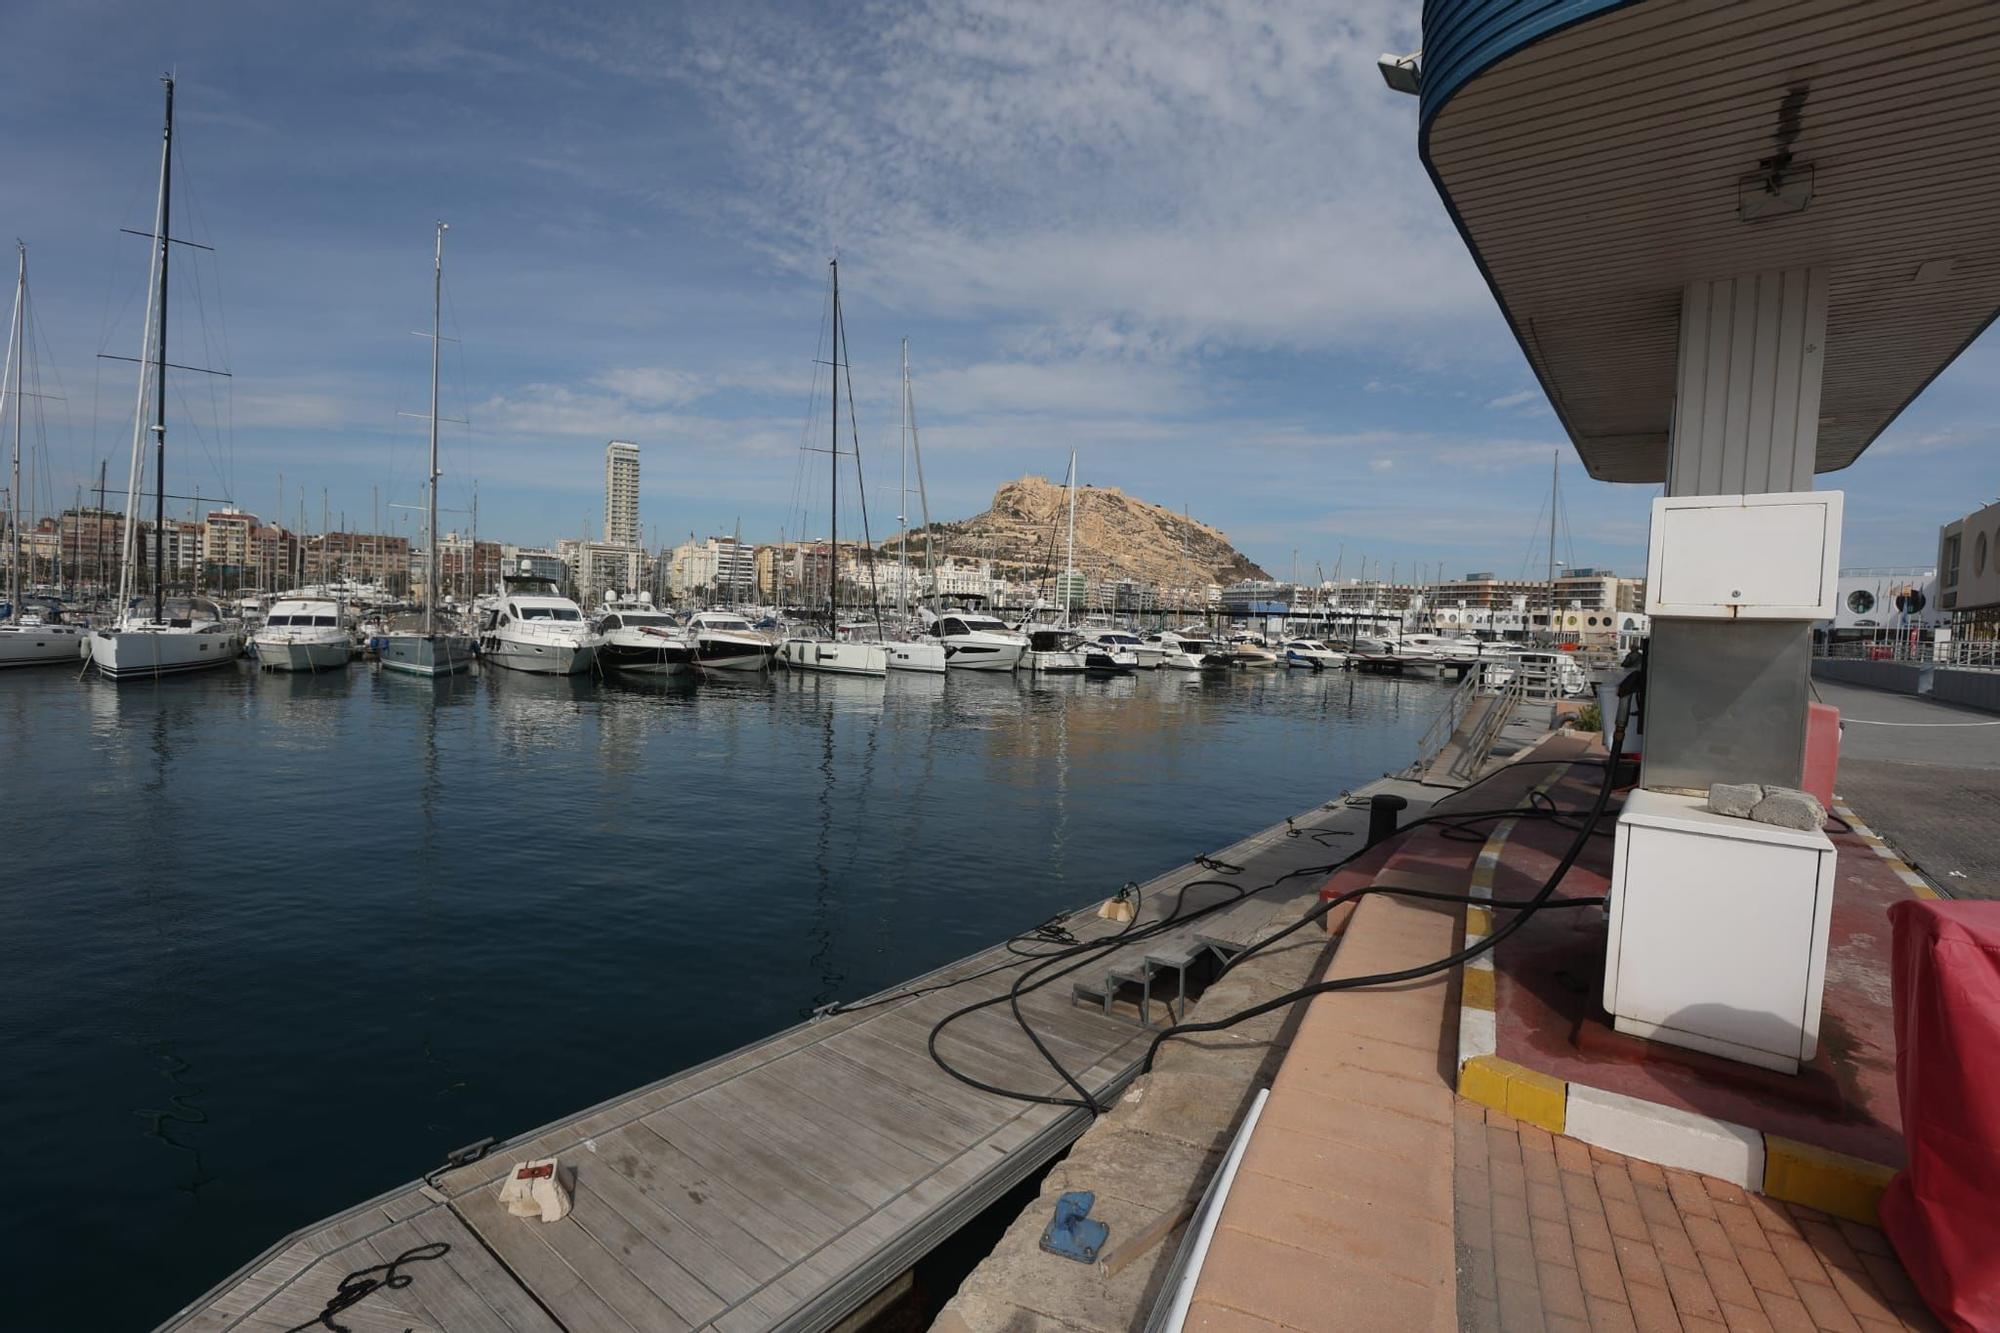 Zona donde ha aparecido el cadáver en el puerto de Alicante